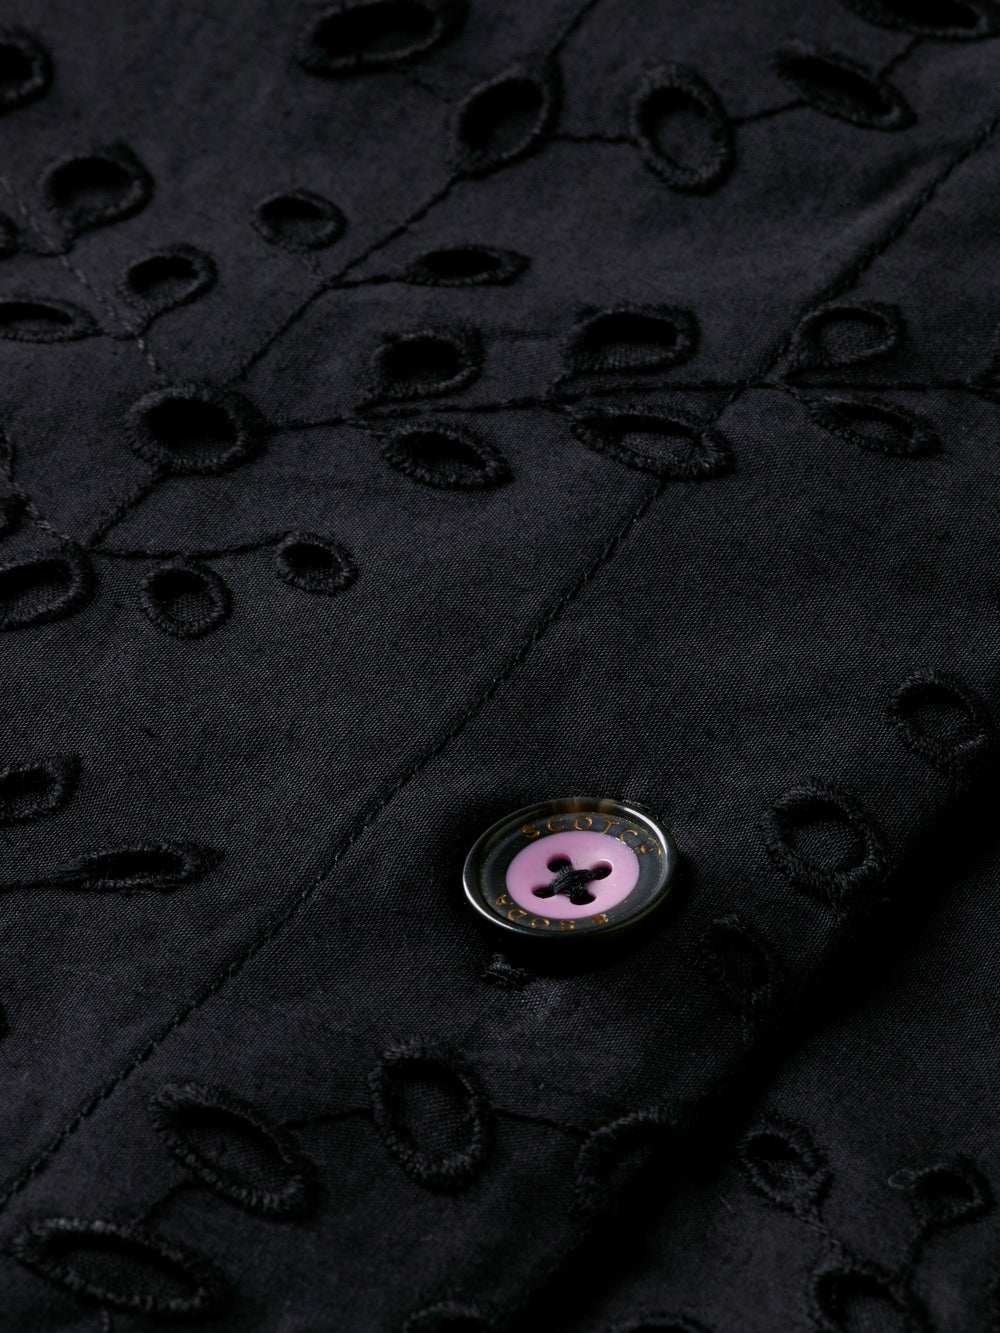 Puff sleeve embroidered shirt dress - Scotch & Soda NZ